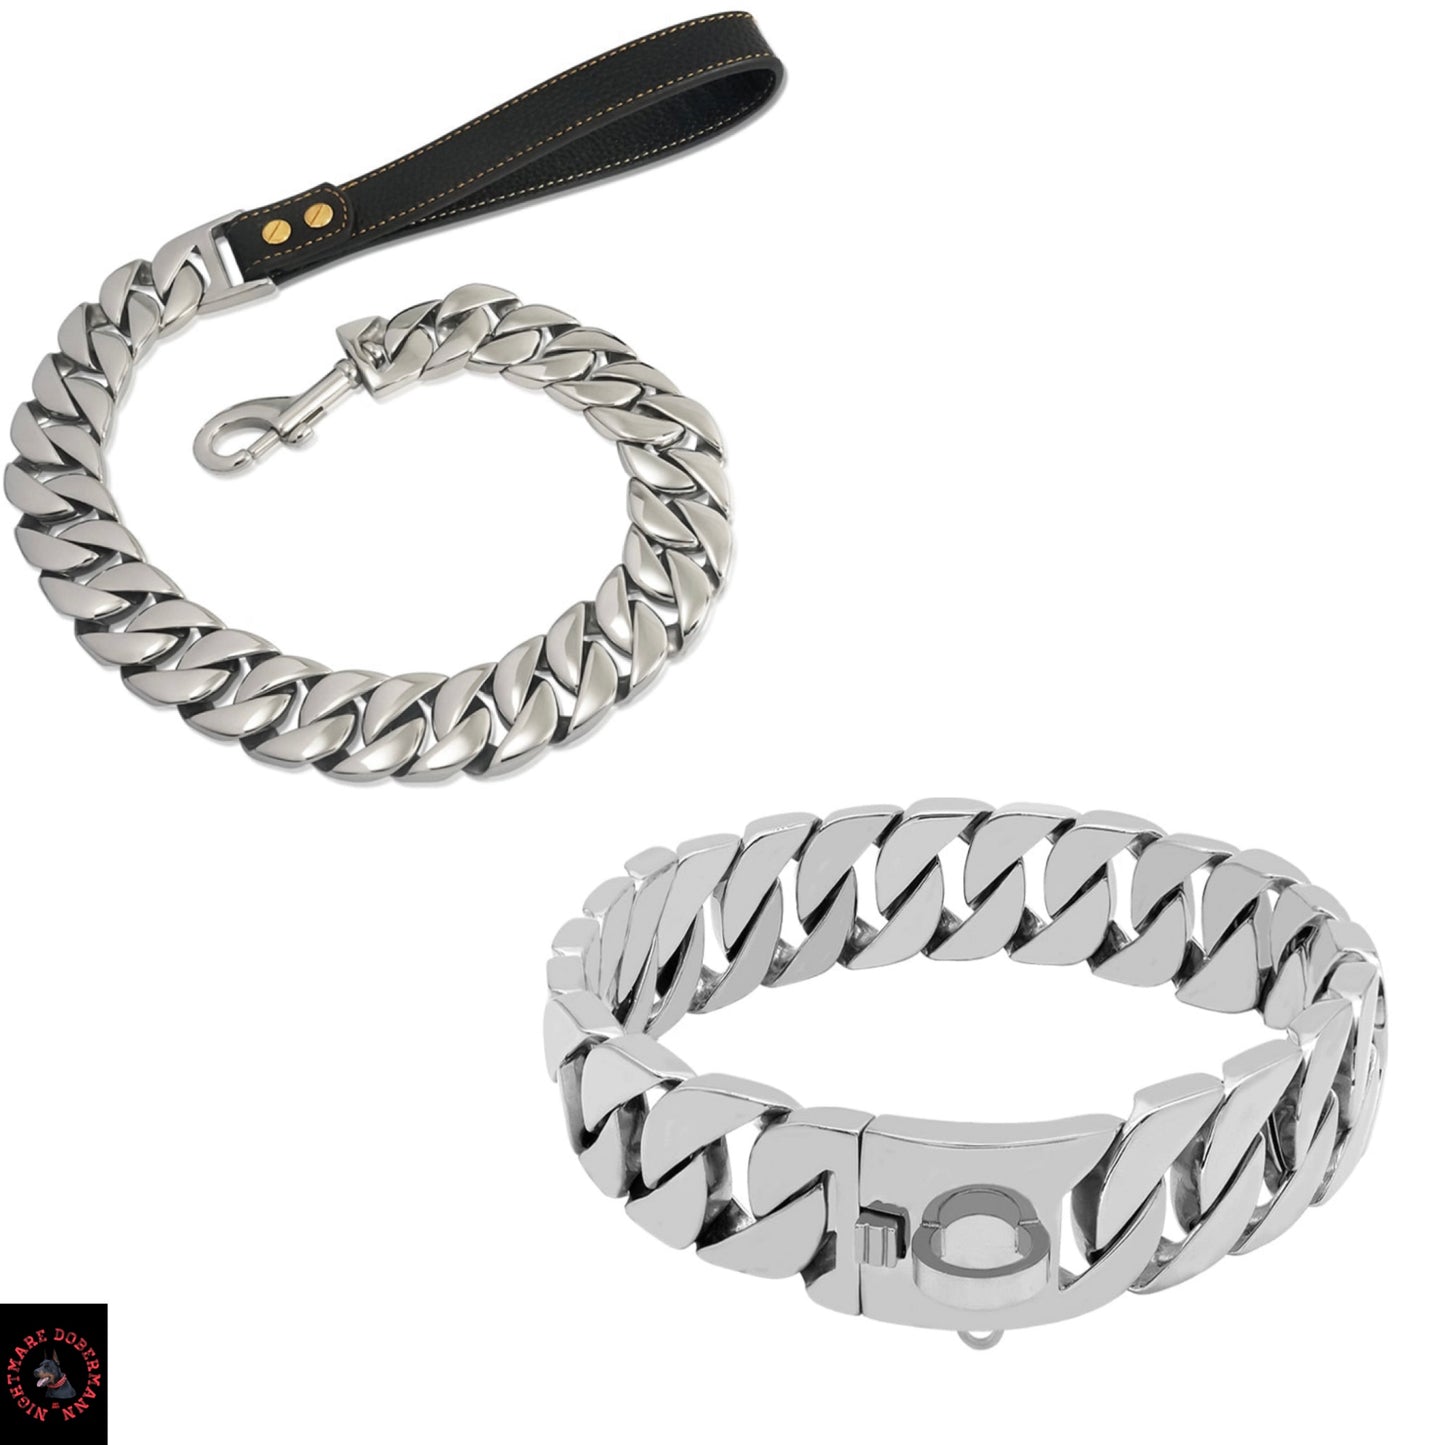 Silver Luxury Dog Collar + Luxury Silver Leash Bundle